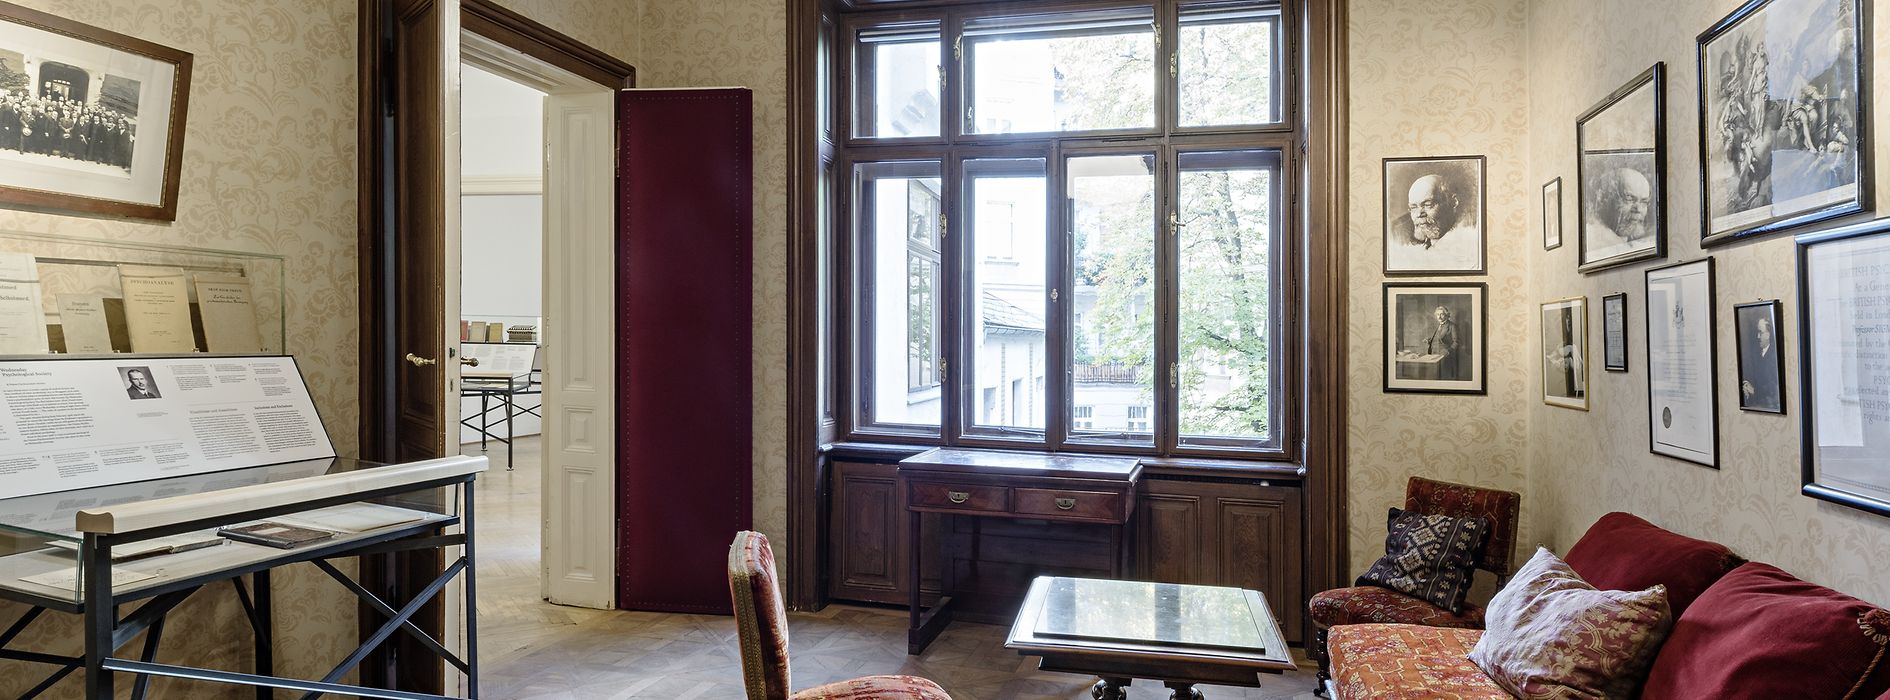 Čekárna s původním nábytkem v Muzeu Sigmunda Freuda 